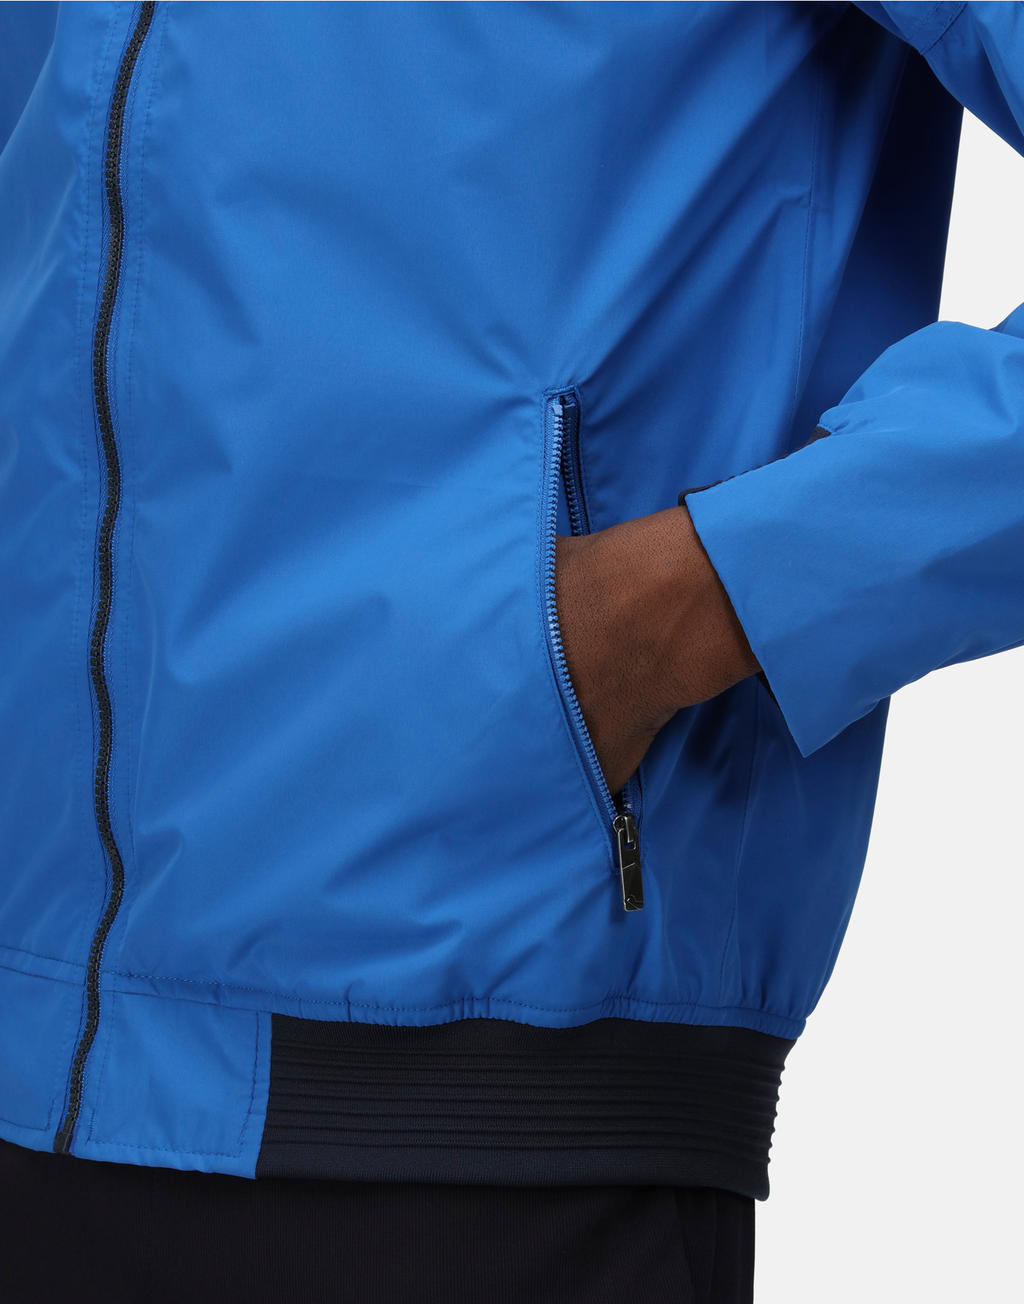  Finn Waterproof Shell Jacket in Farbe Navy